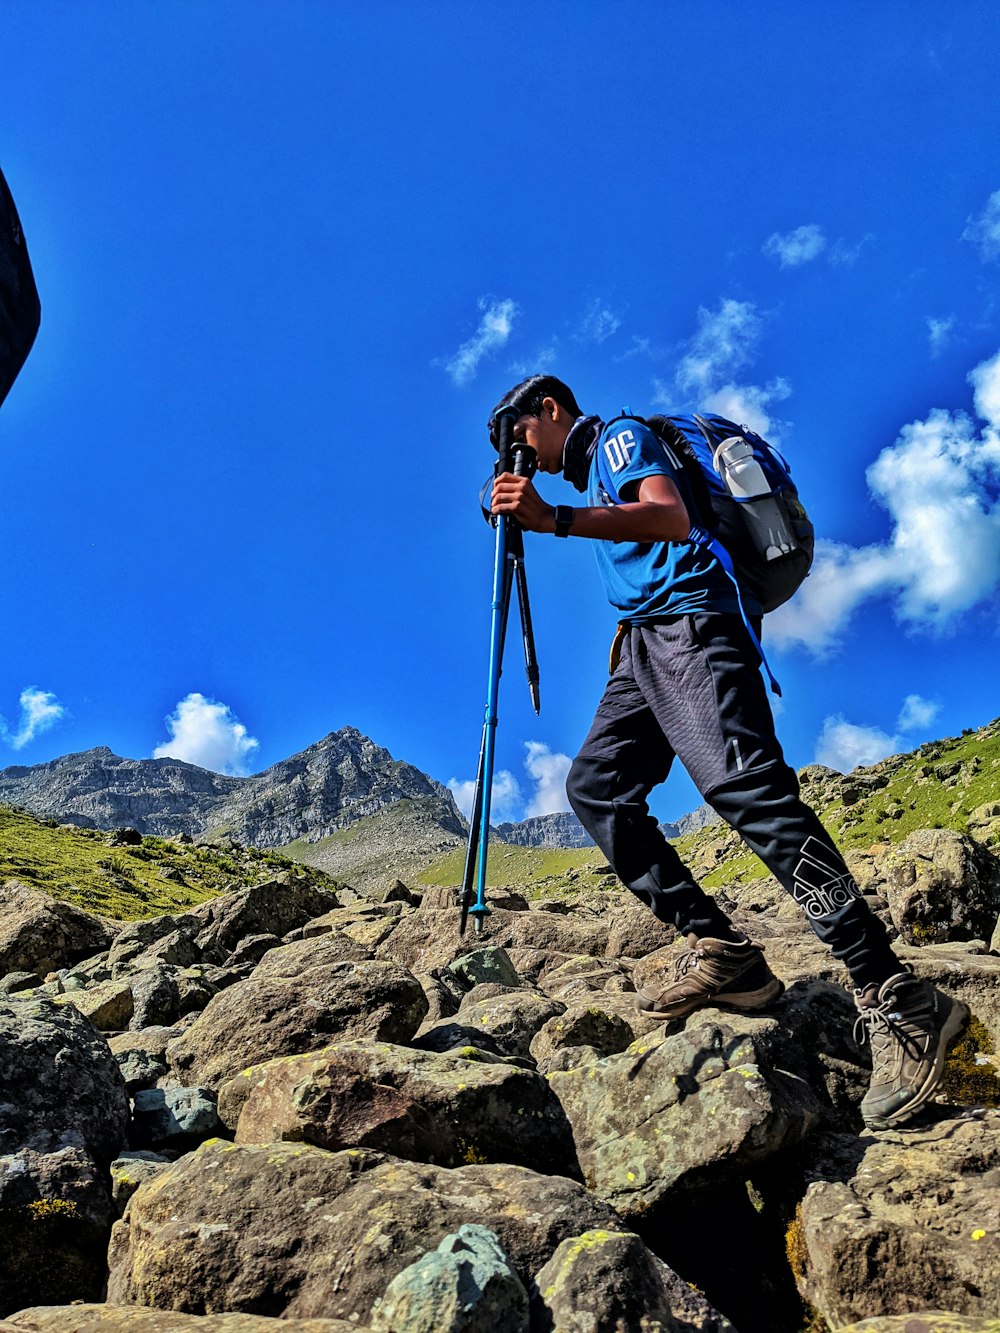 Un hombre escalando una montaña rocosa con una mochila